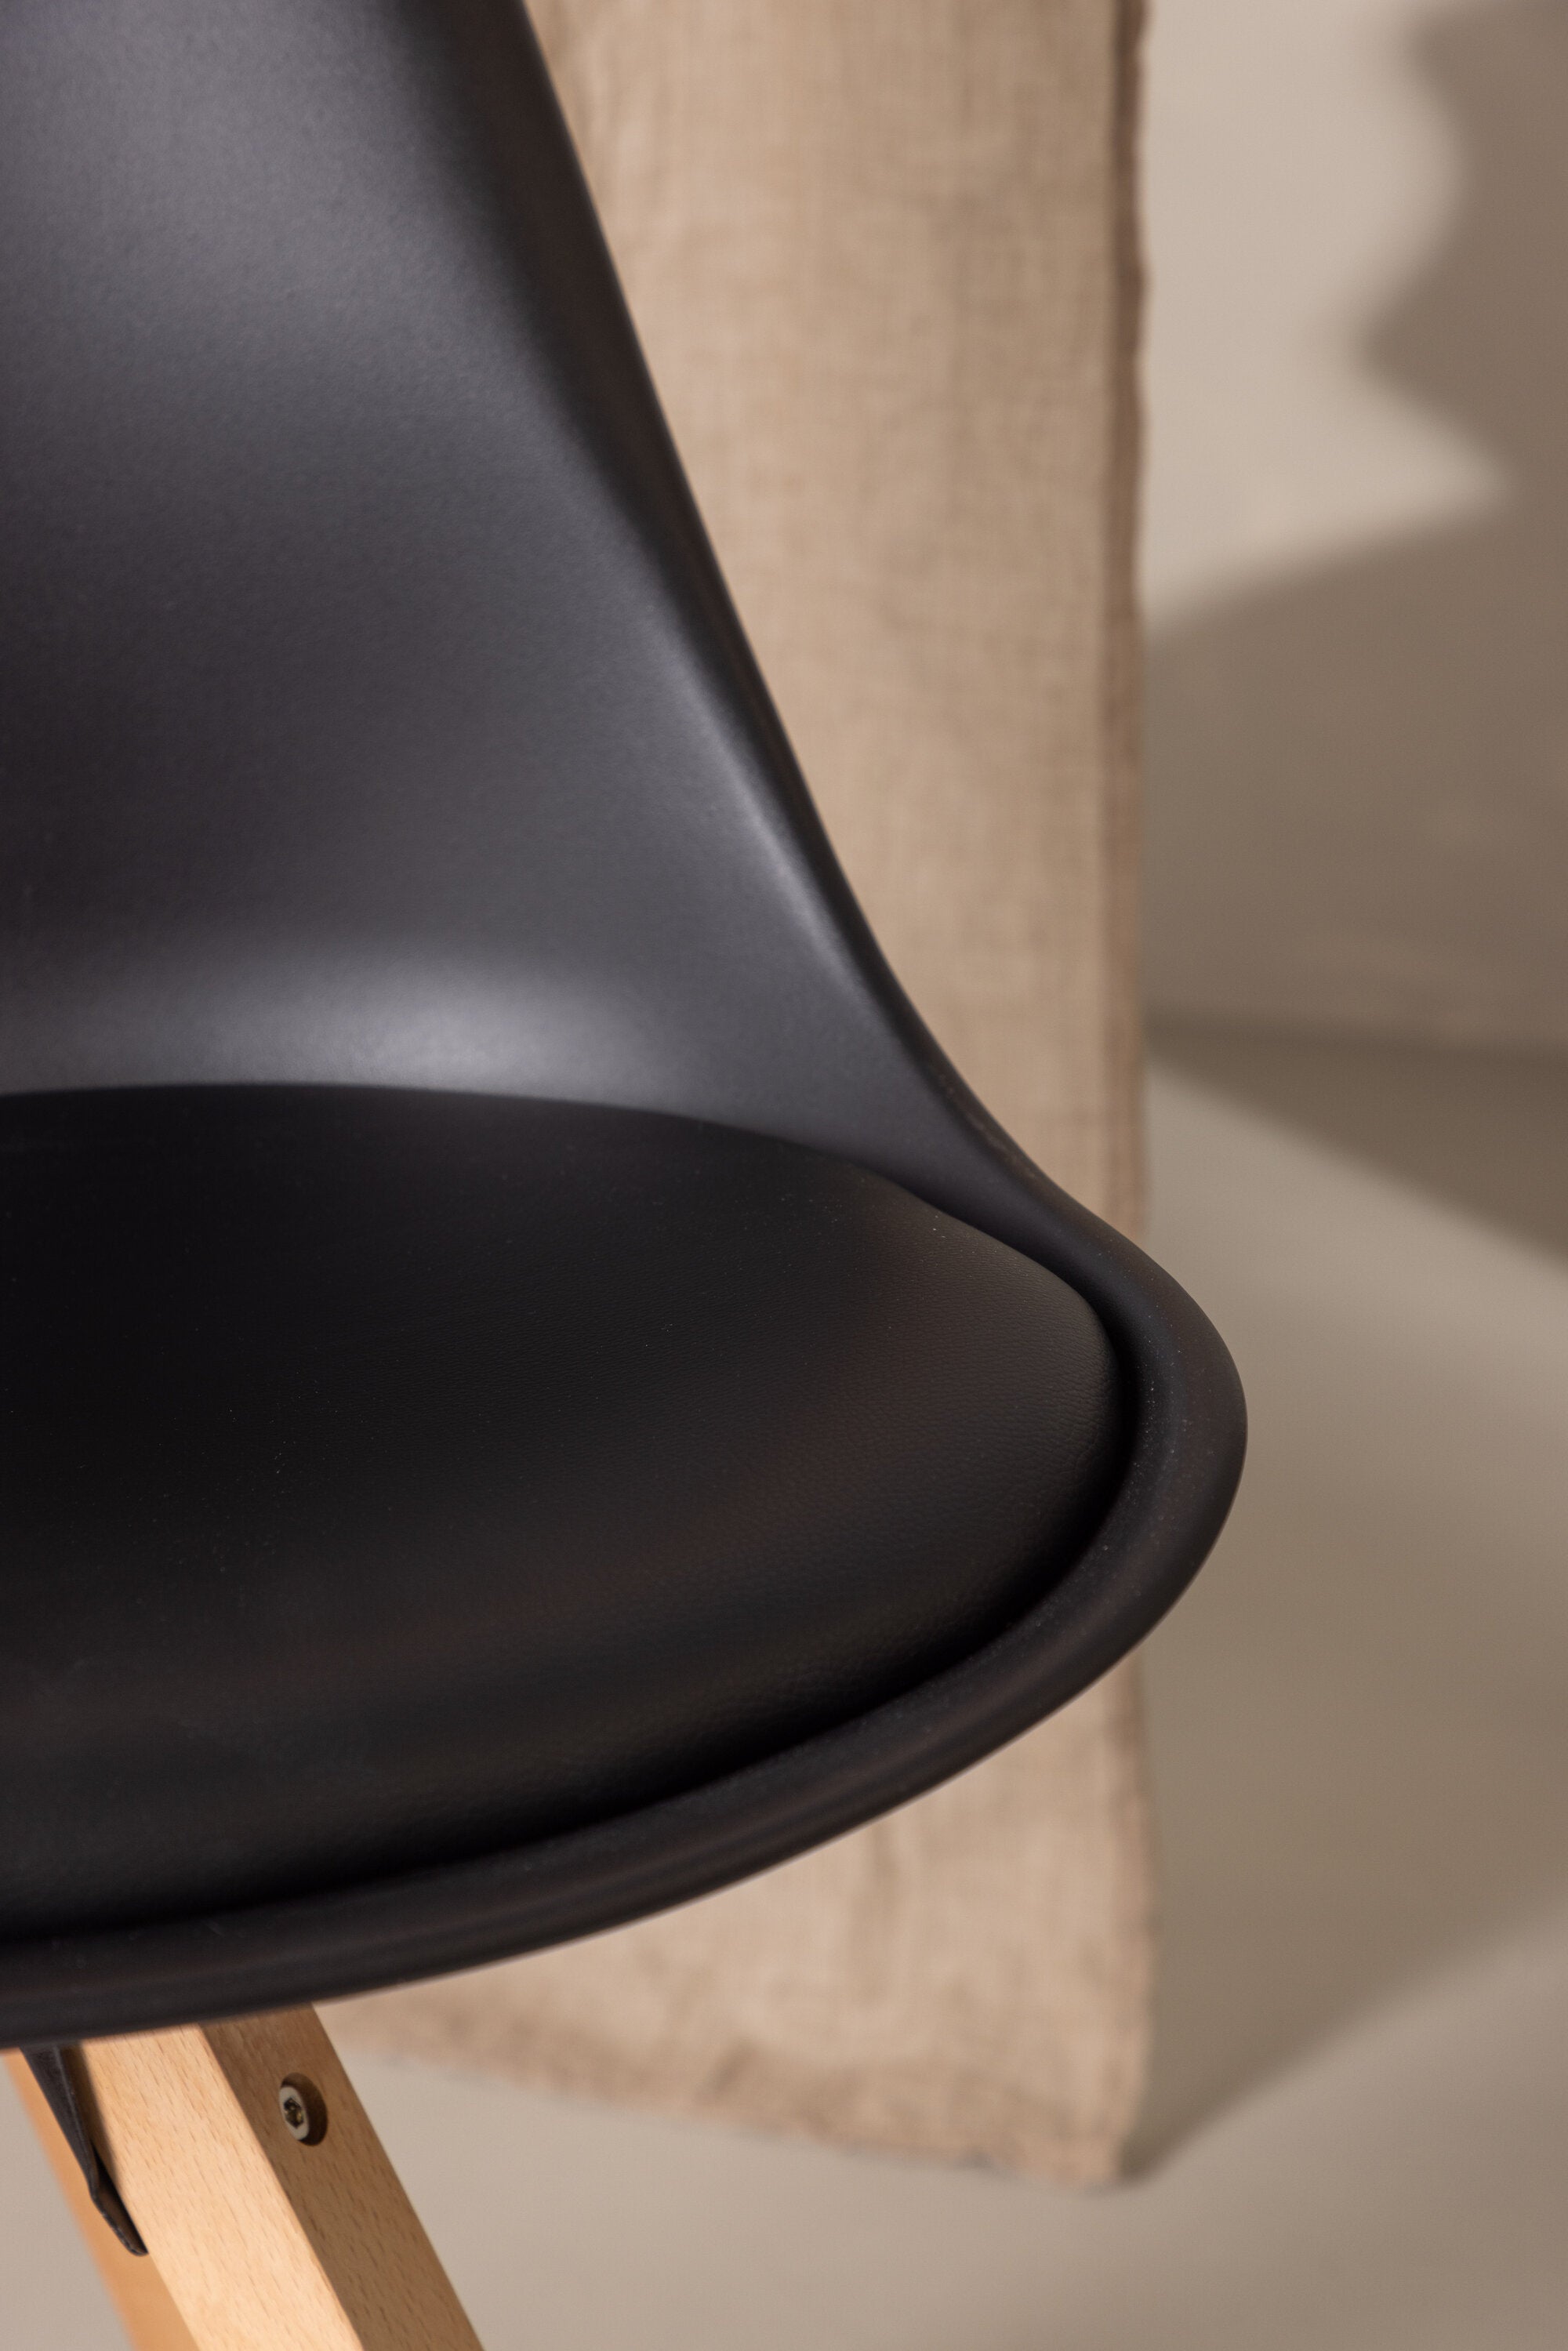 Zeno Stuhl in Schwarz / Natur präsentiert im Onlineshop von KAQTU Design AG. Stuhl ist von Venture Home